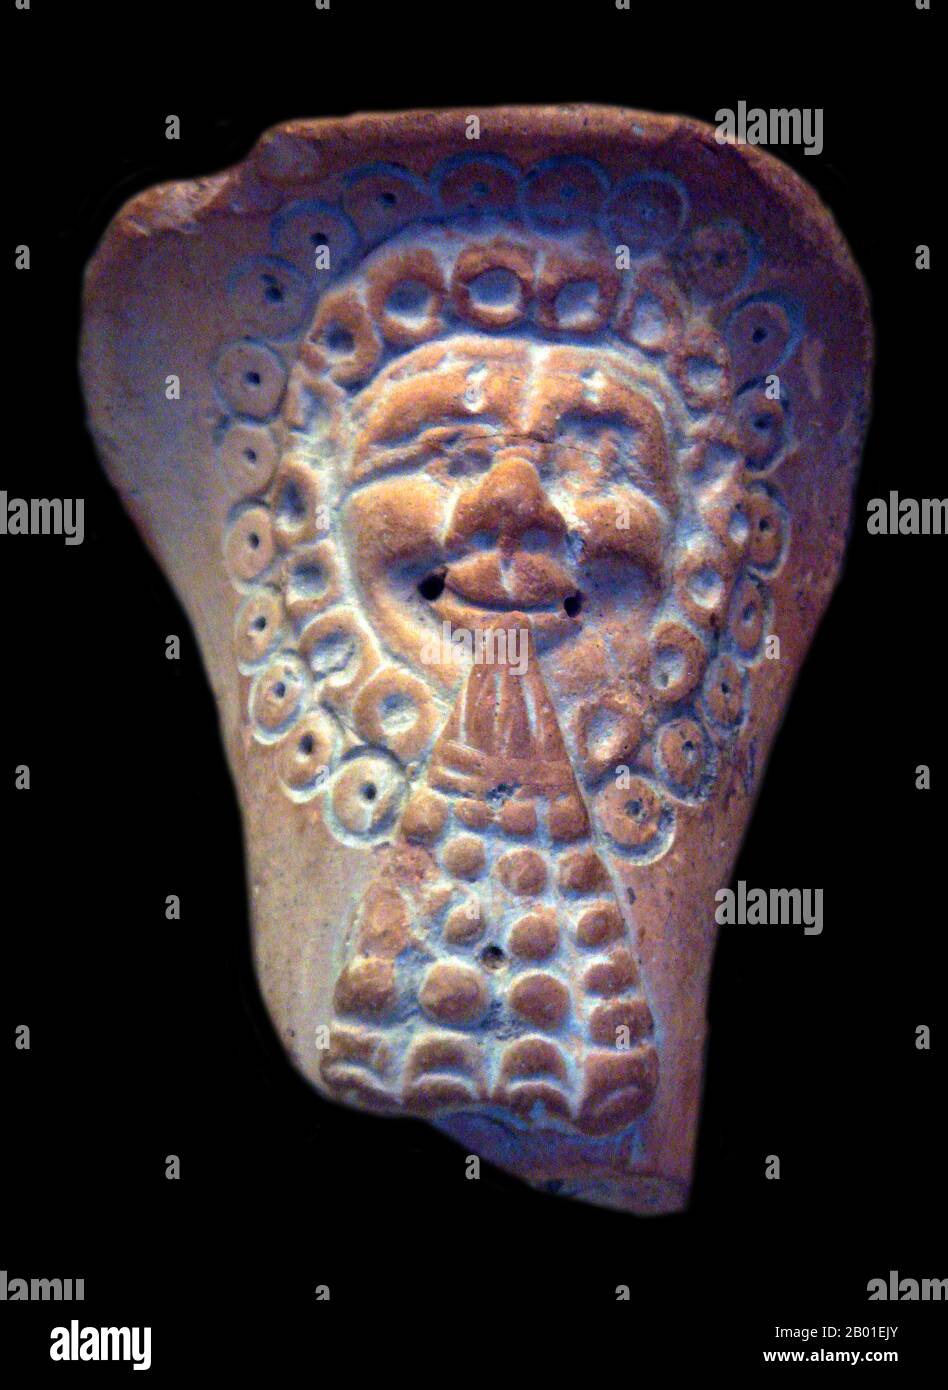 China: Keramikfigur mit westlichen Elementen, Yotkan bei Khotan, Xinjiang, 2.-4. Jahrhundert CE. Foto von Uploadalt (CC BY-SA 3,0 Lizenz). Das Königreich Khotan war ein altes buddhistisches Königreich, das sich am Zweig der Seidenstraße befand, die am südlichen Rand der Taklamakan-Wüste im Tarim-Becken verlief. Der Name des Königreiches in der Region namens Khotan hat viele Formen erhalten. Die Einheimischen rund um das 3. Jahrhundert schrieben Khotana in Kharoşţhī-Schrift; und Hvatäna- in Brāhmī in den etwas späteren Texten, wobei die Sprache, die sich entwickelte, Hvamna und Hvam kamen. Stockfoto